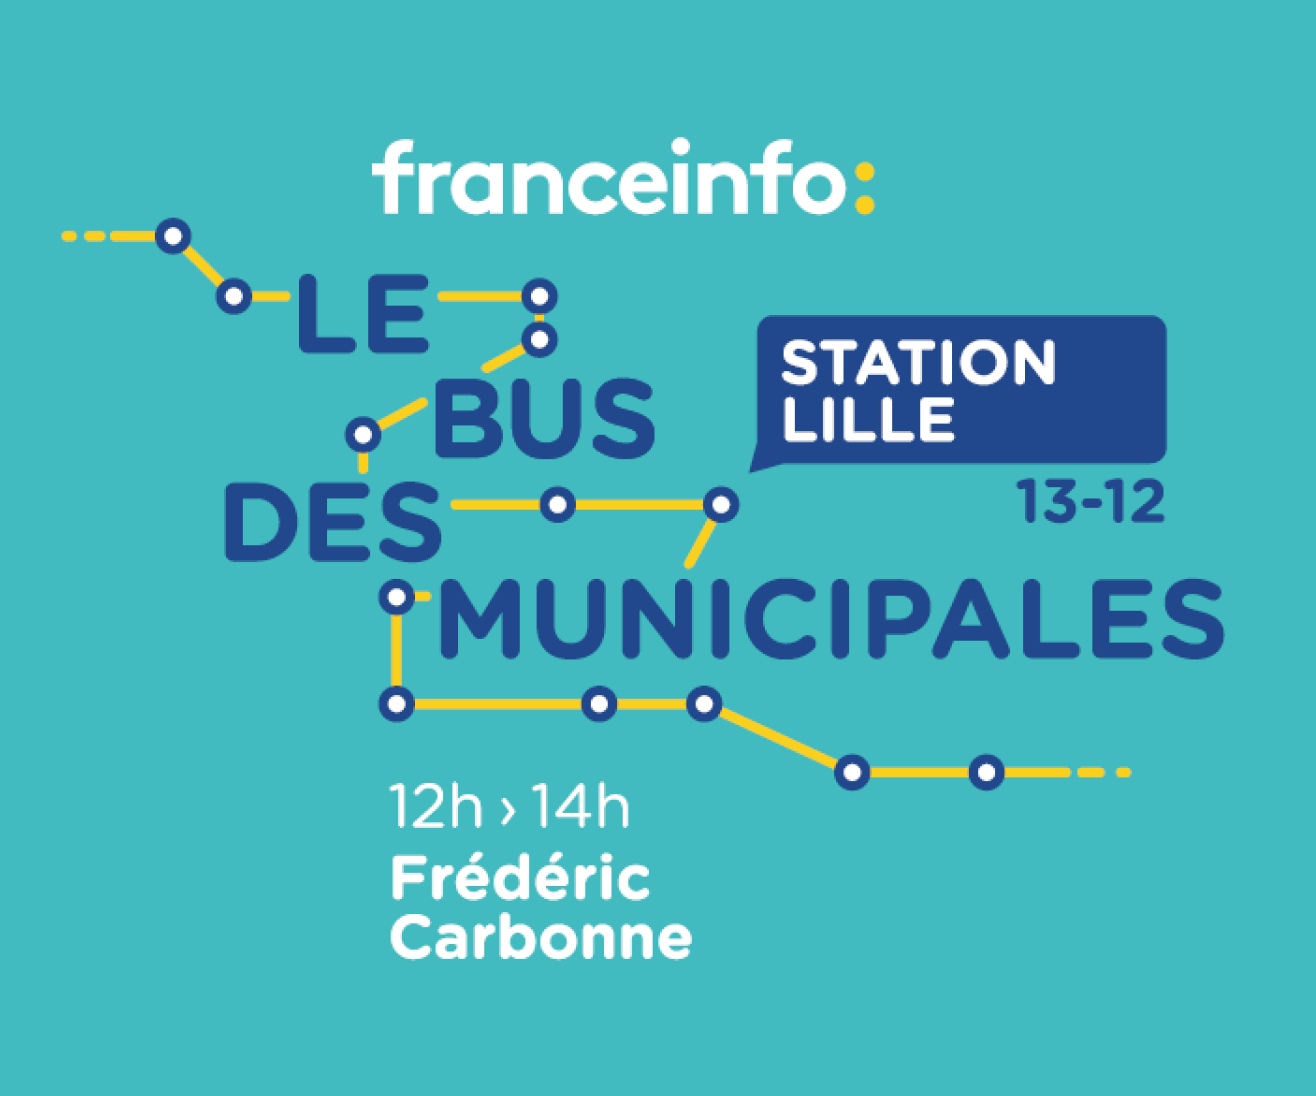 franceinfo : "Le bus des municipales" s'arrête à Lille 